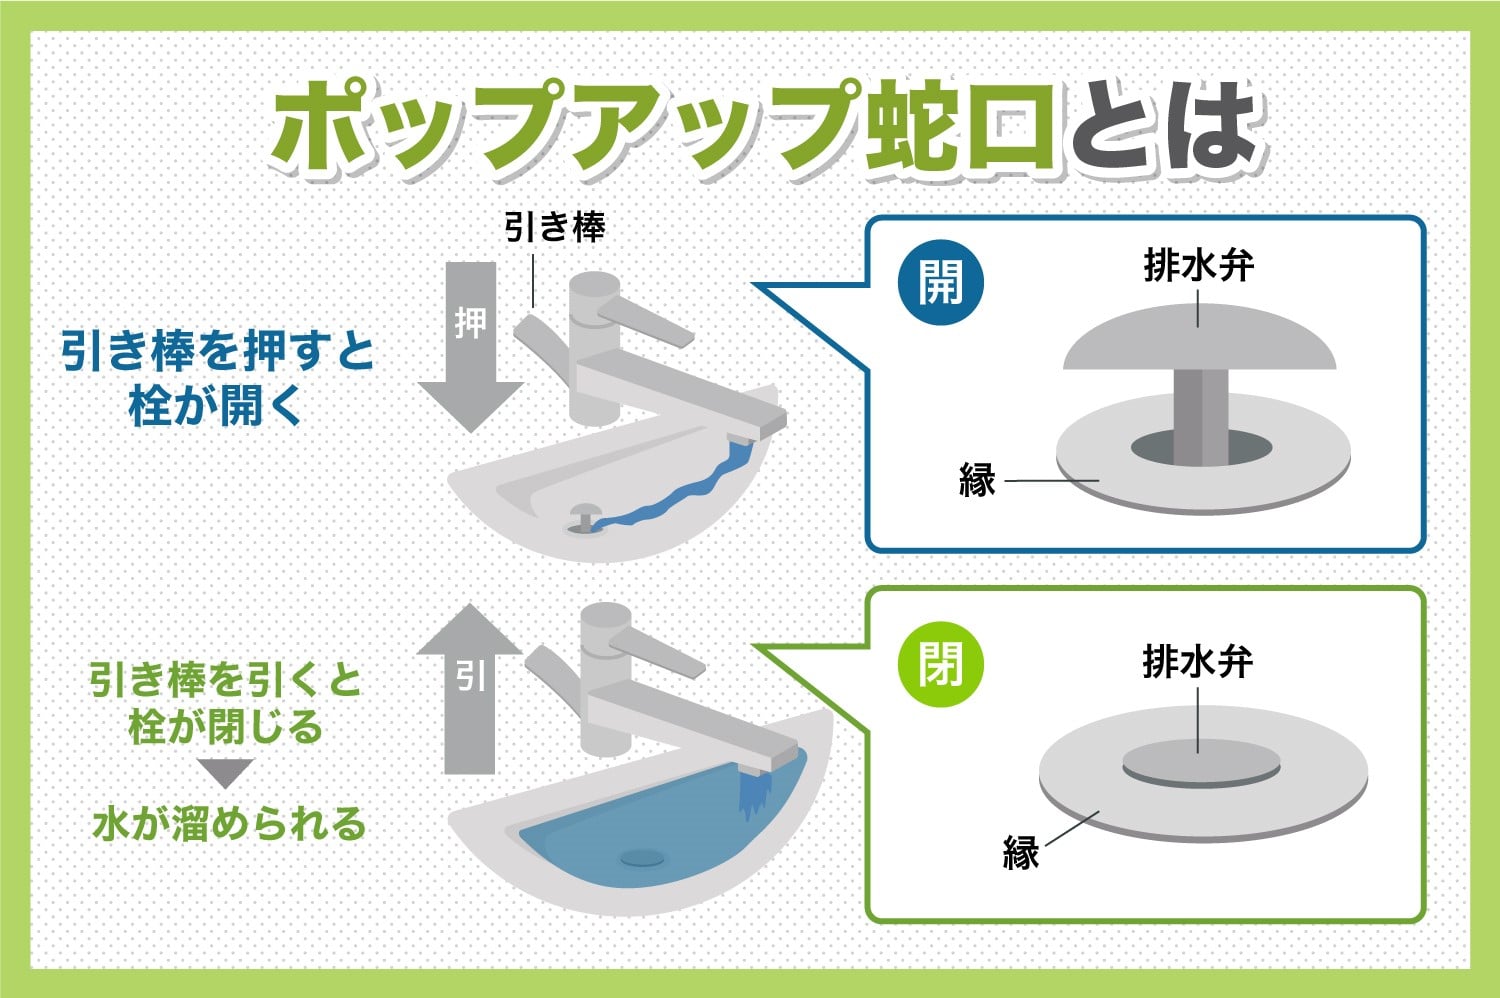 洗面台にあるポップアップ式蛇口を修理する方法